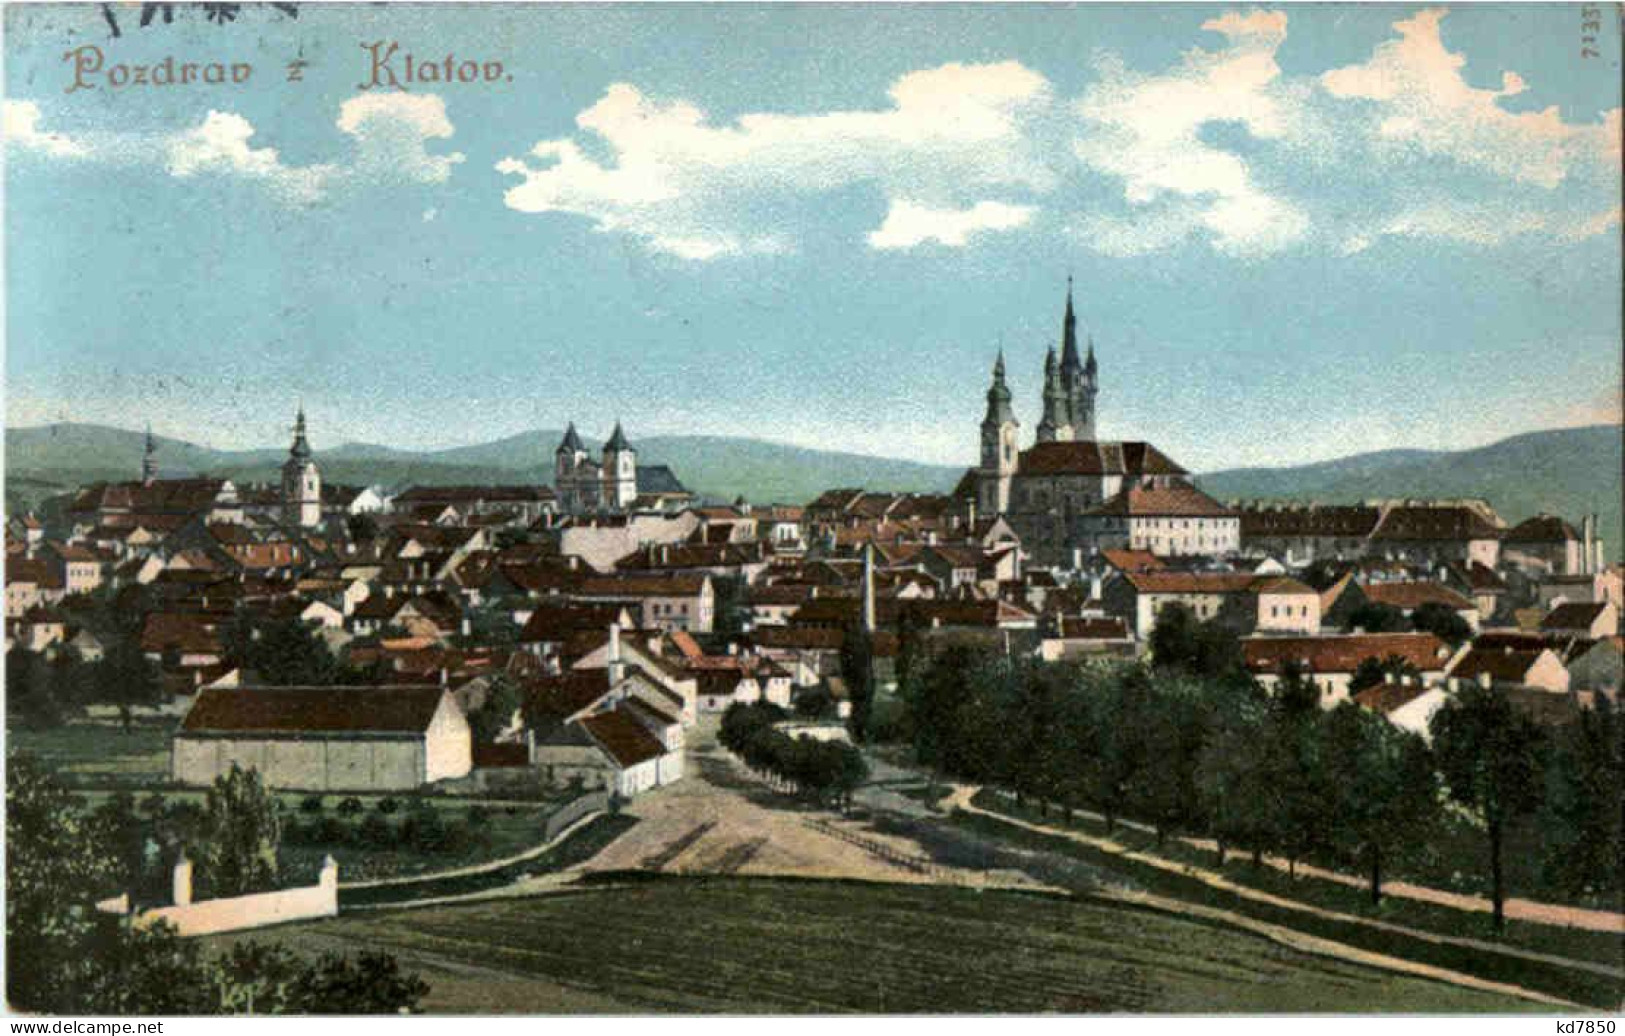 Pozdrav Z Klatov - Czech Republic